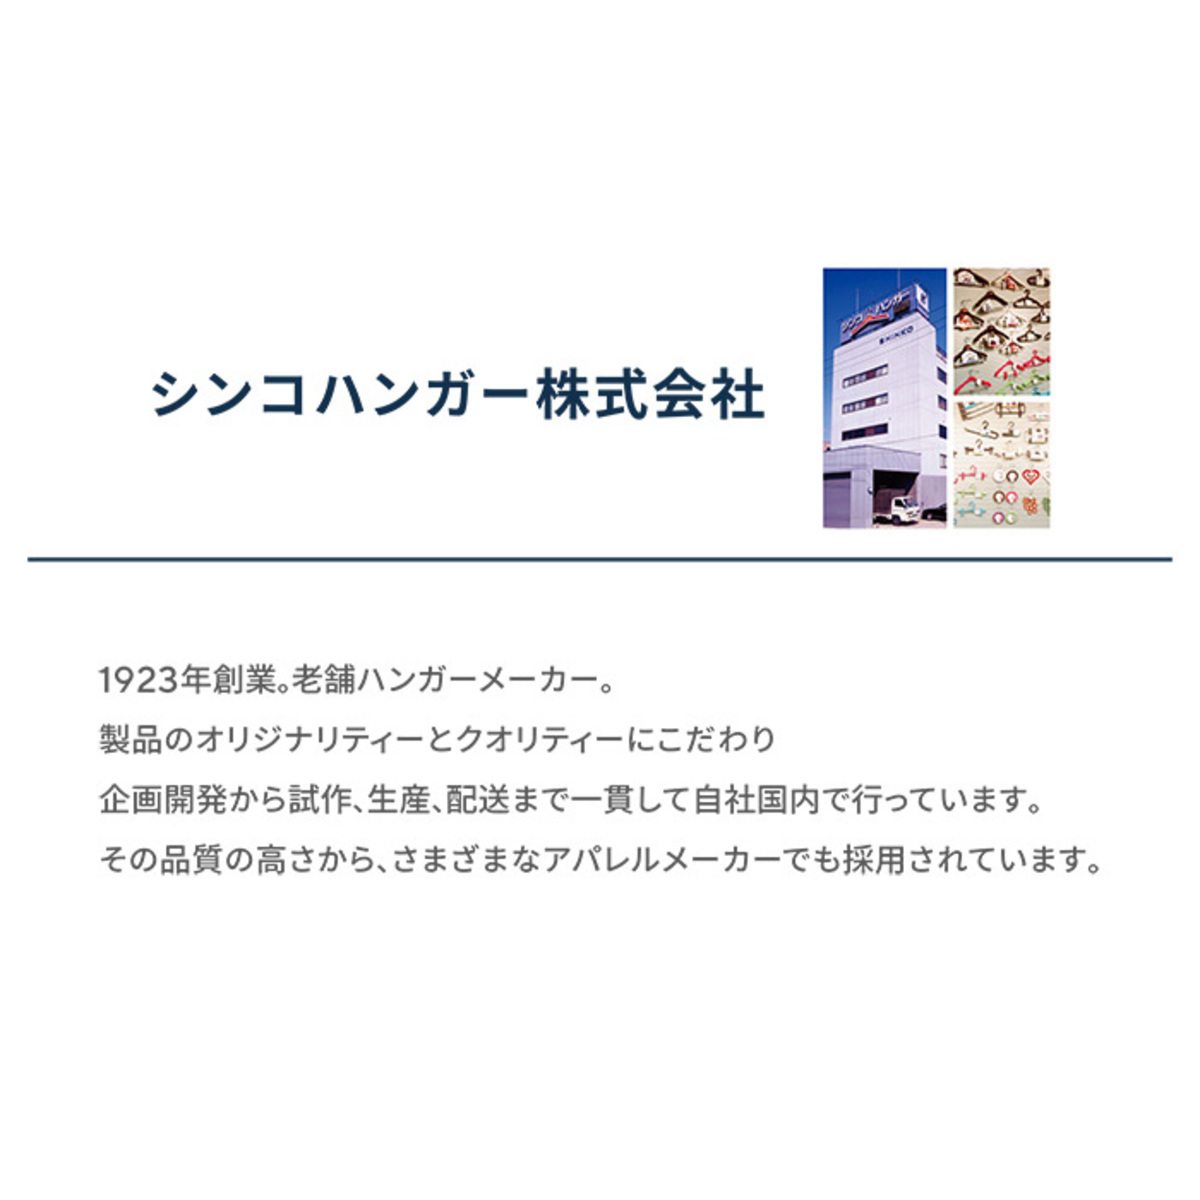 コジマジック収育のススメ スーツハンガー6本セット - QVC.jp